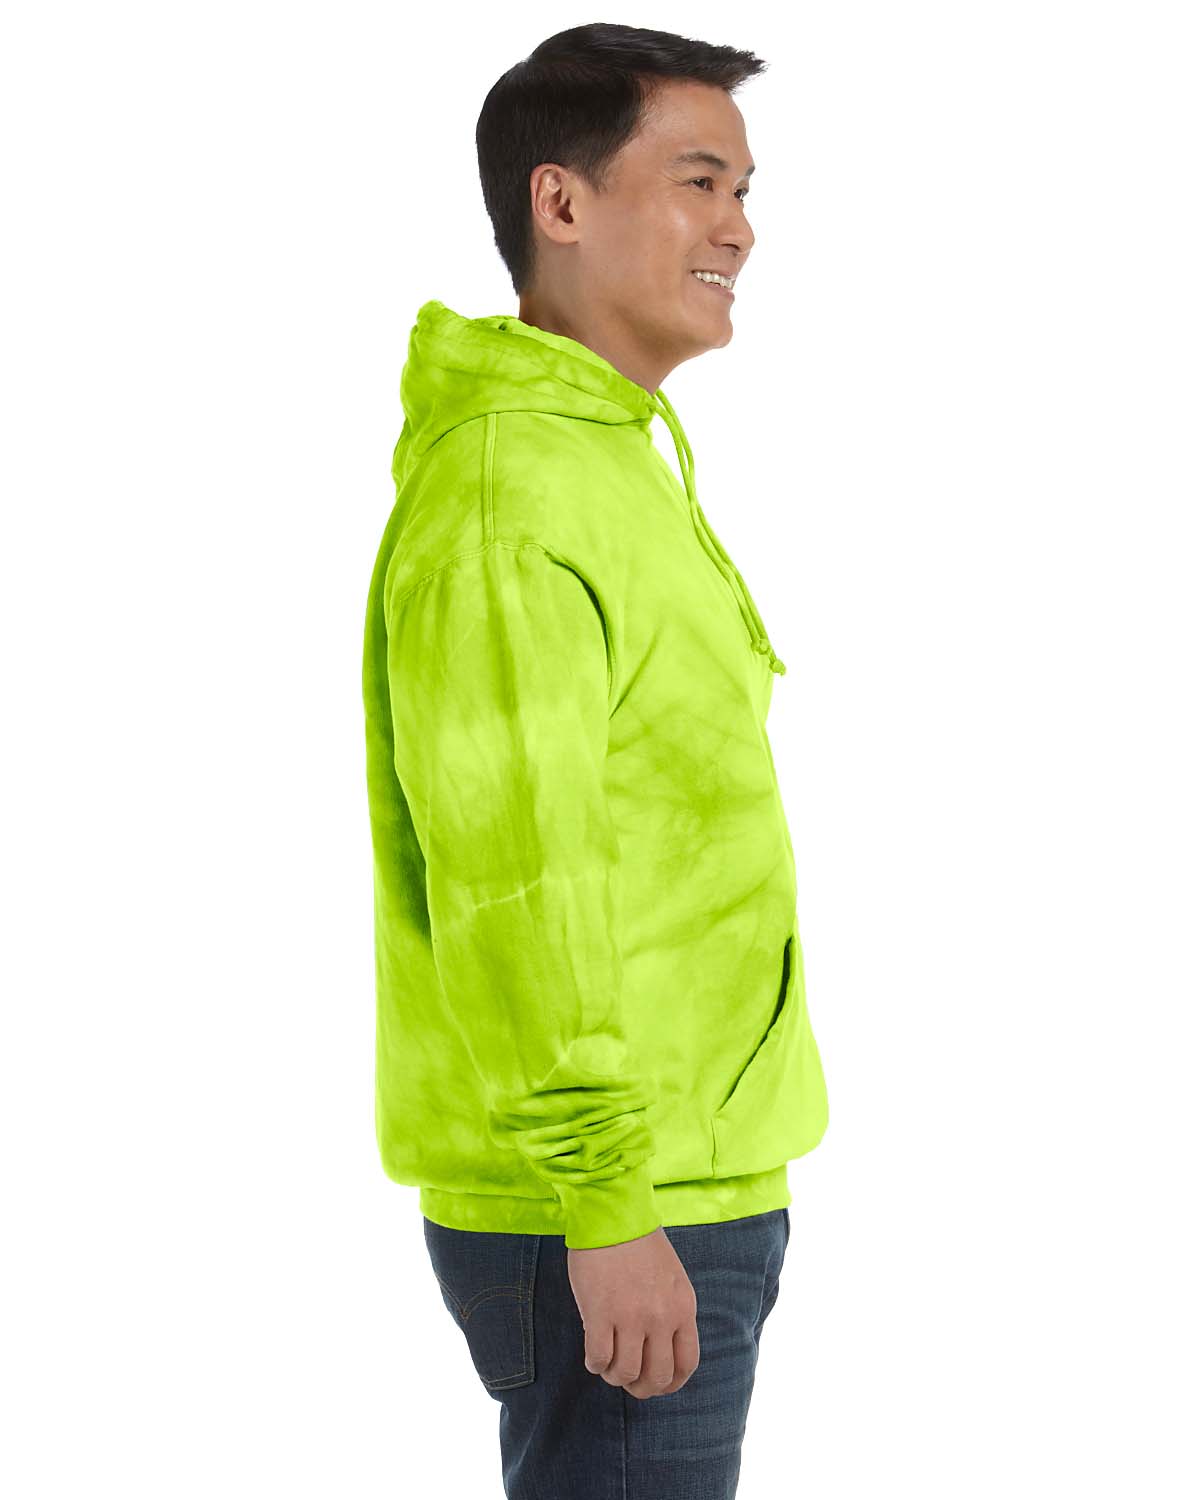 Tie-Dye CD877 Mens Hooded Sweatshirt Hoodie Lime Green Side